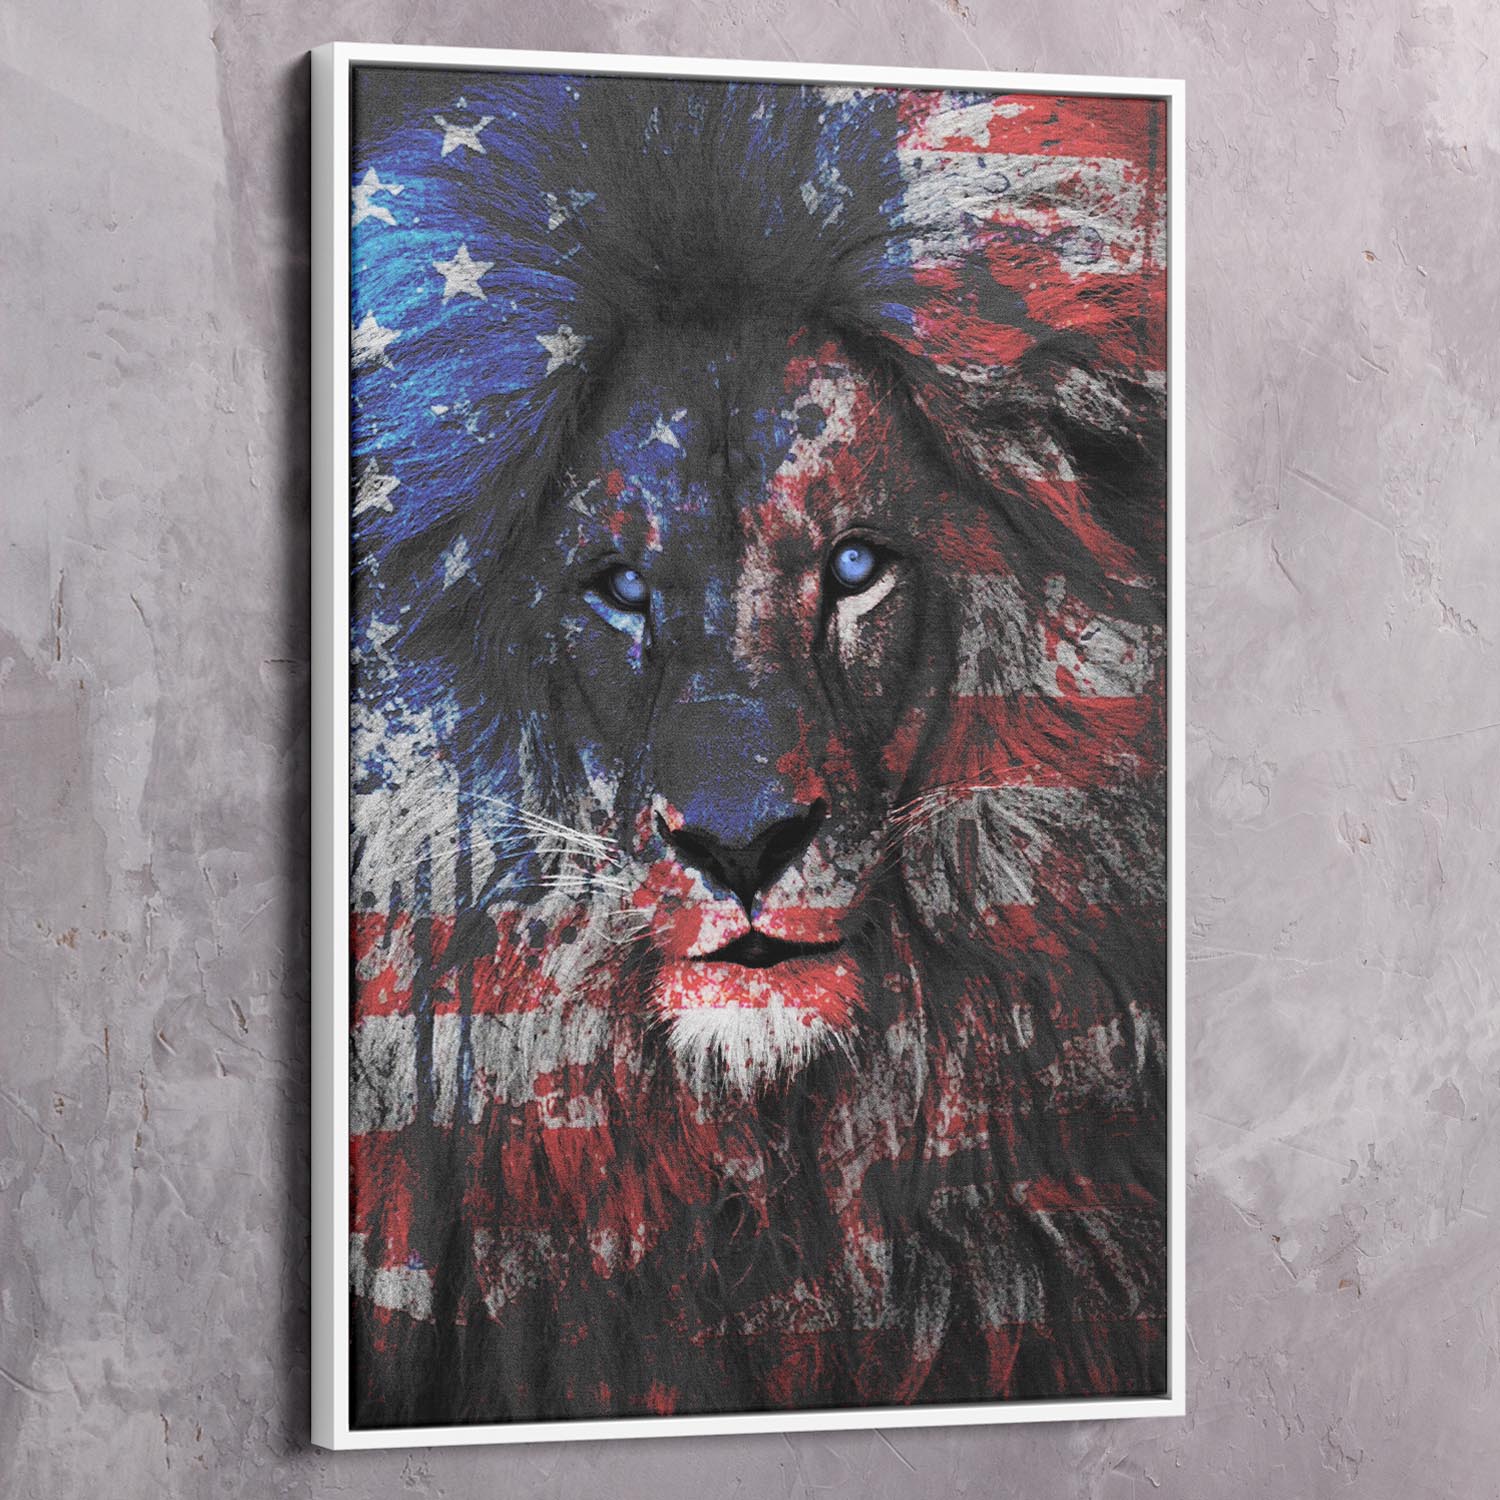 American Lion Wall Art | Inspirational Wall Art Motivational Wall Art Quotes Office Art | ImpaktMaker Exclusive Canvas Art Landscape